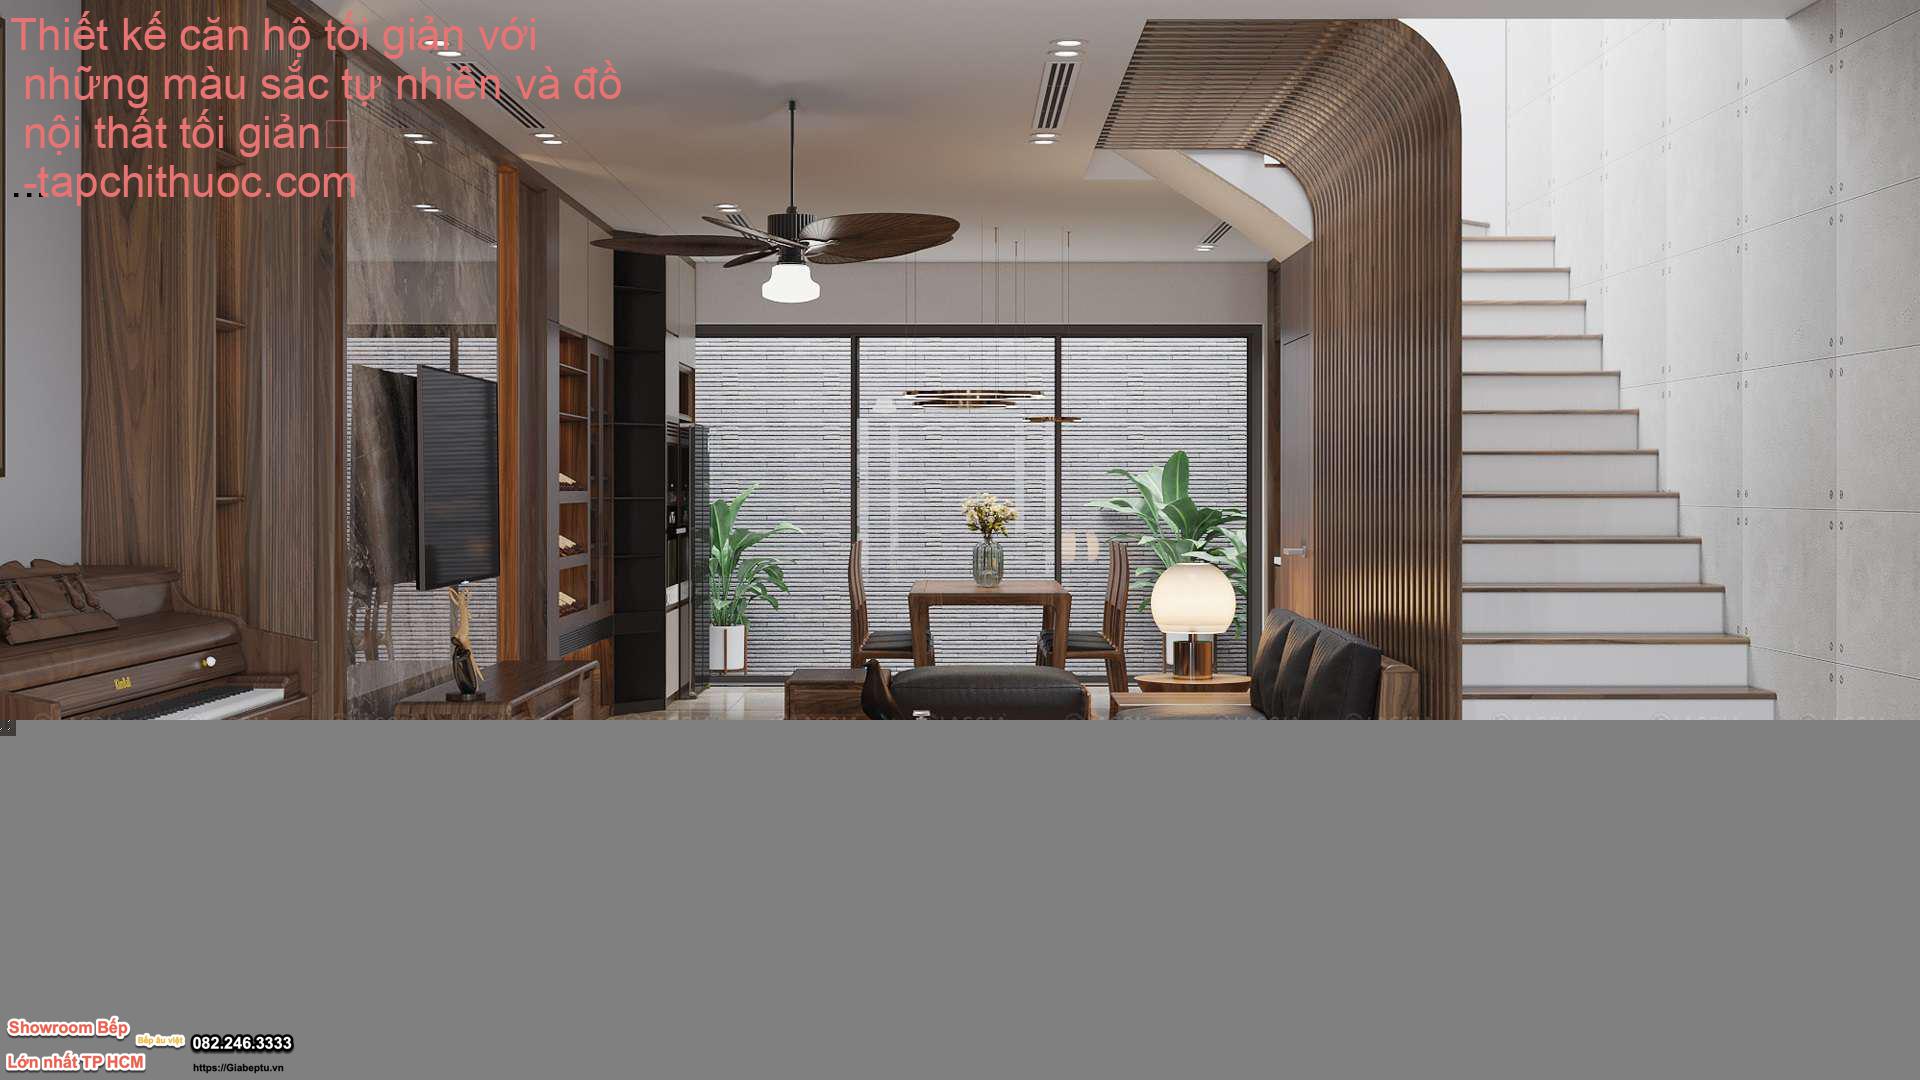 Thiết kế căn hộ tối giản với những màu sắc tự nhiên và đồ nội thất tối giản
